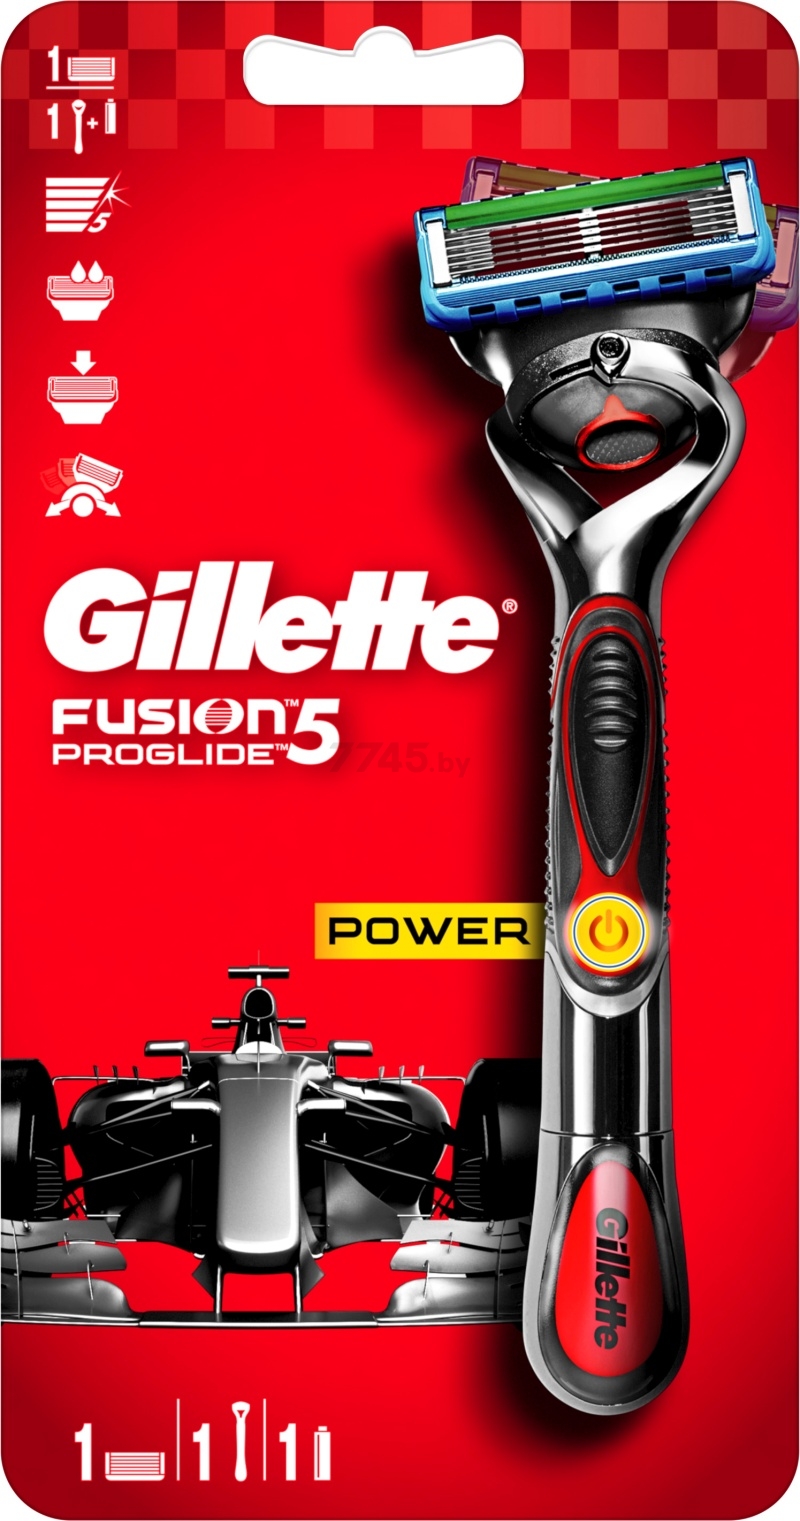 Бритва GILLETTE Fusion5 ProGlide Power FlexBall и кассета 1 штука (на батарейке) (7702018509775) - Фото 2